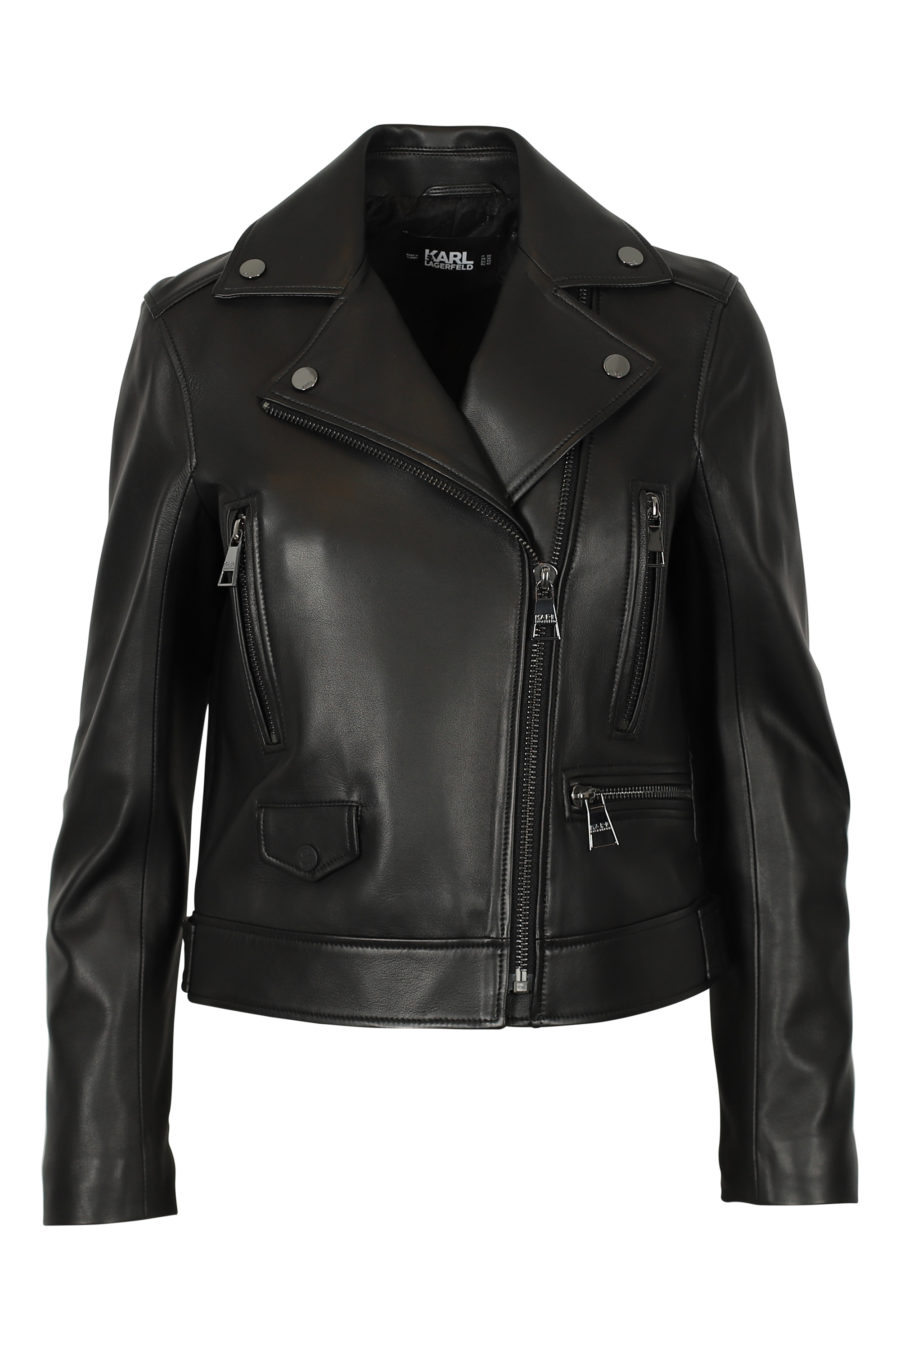 Black biker jacket with patterned back - IMG 3100